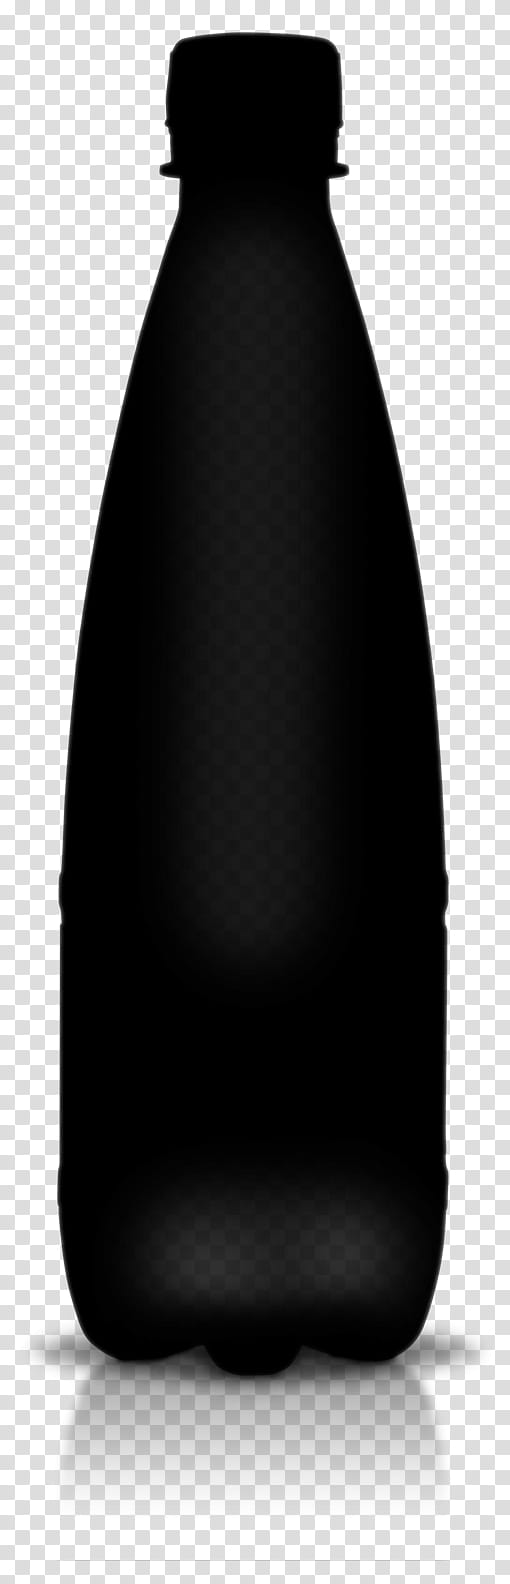 Pencil, Bottle, Liquidm Inc, Black, Pencil Skirt transparent background PNG clipart